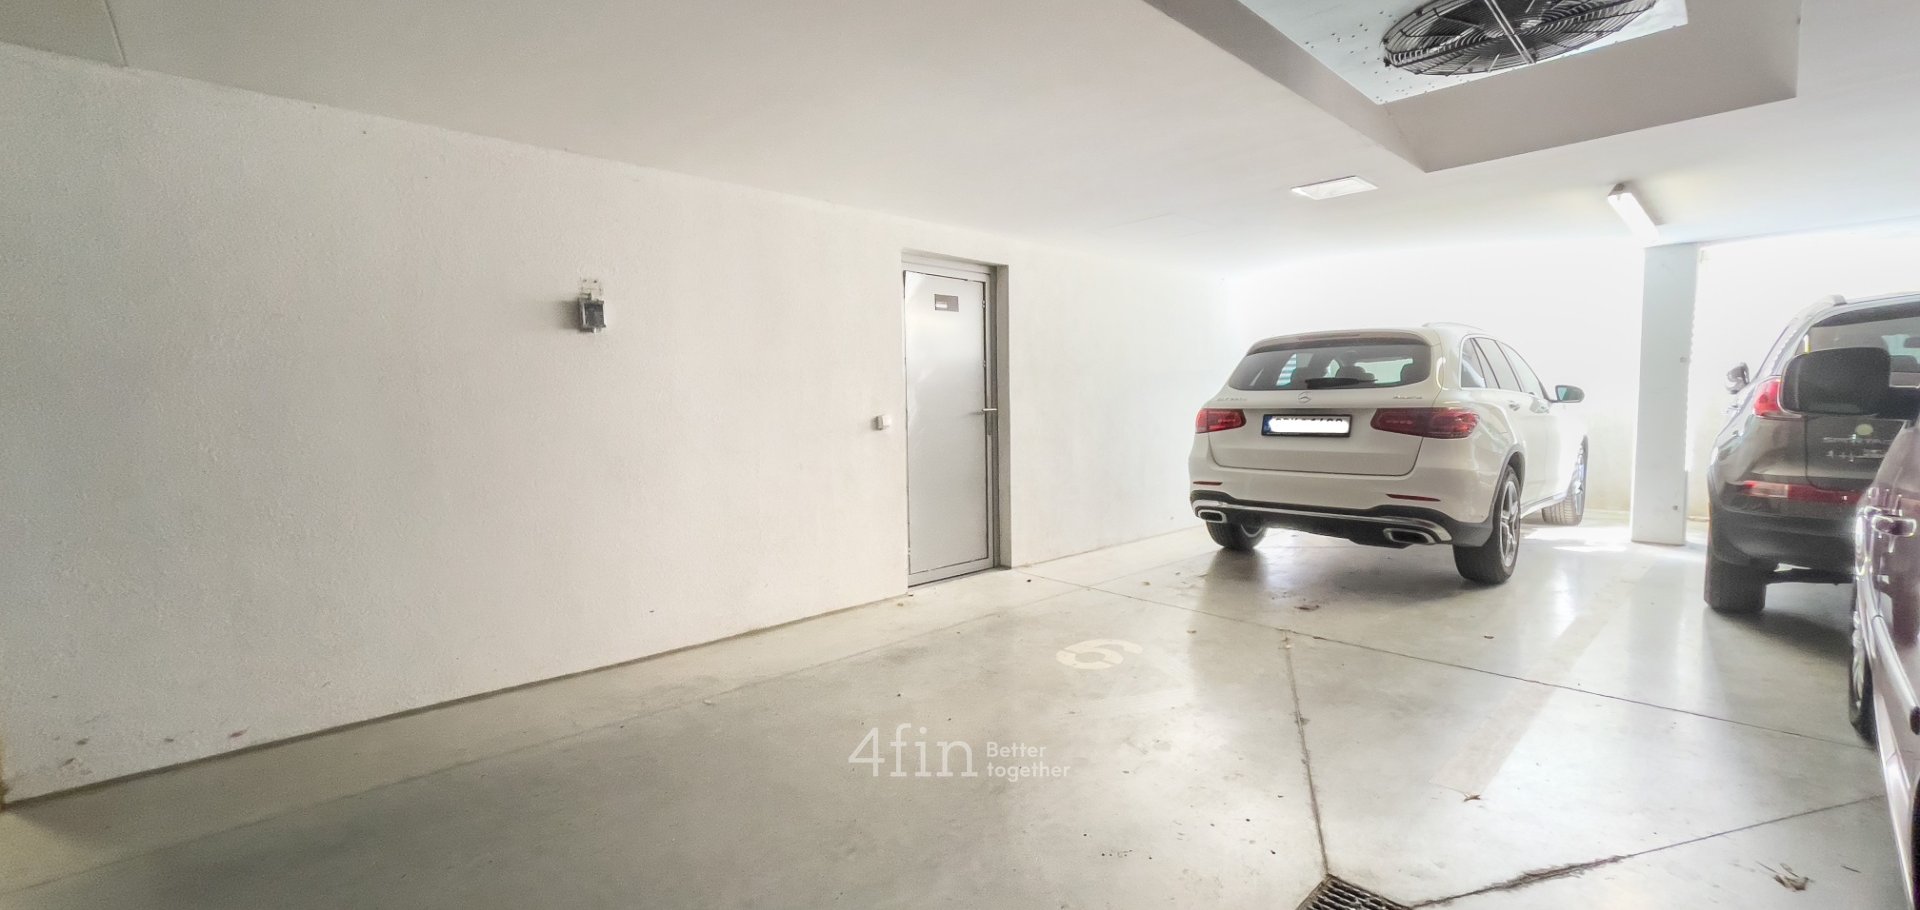 Nadstandardní byt 3+kk, 171m² ve Slatině na ulici Kigginsova s velkou zahradou a garážovým stáním pro 2 auta